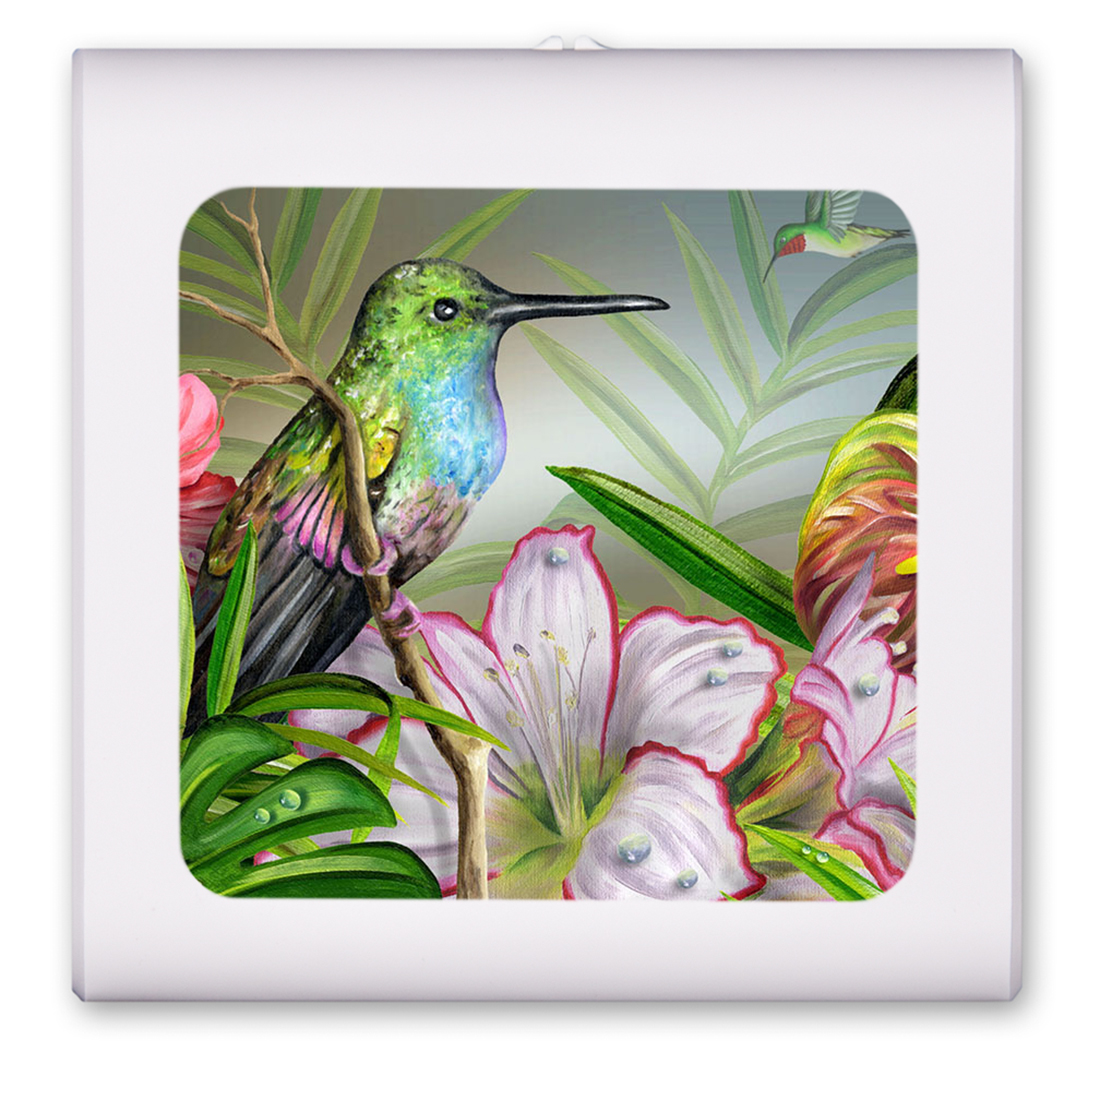 Hummingbird at Rest - #466